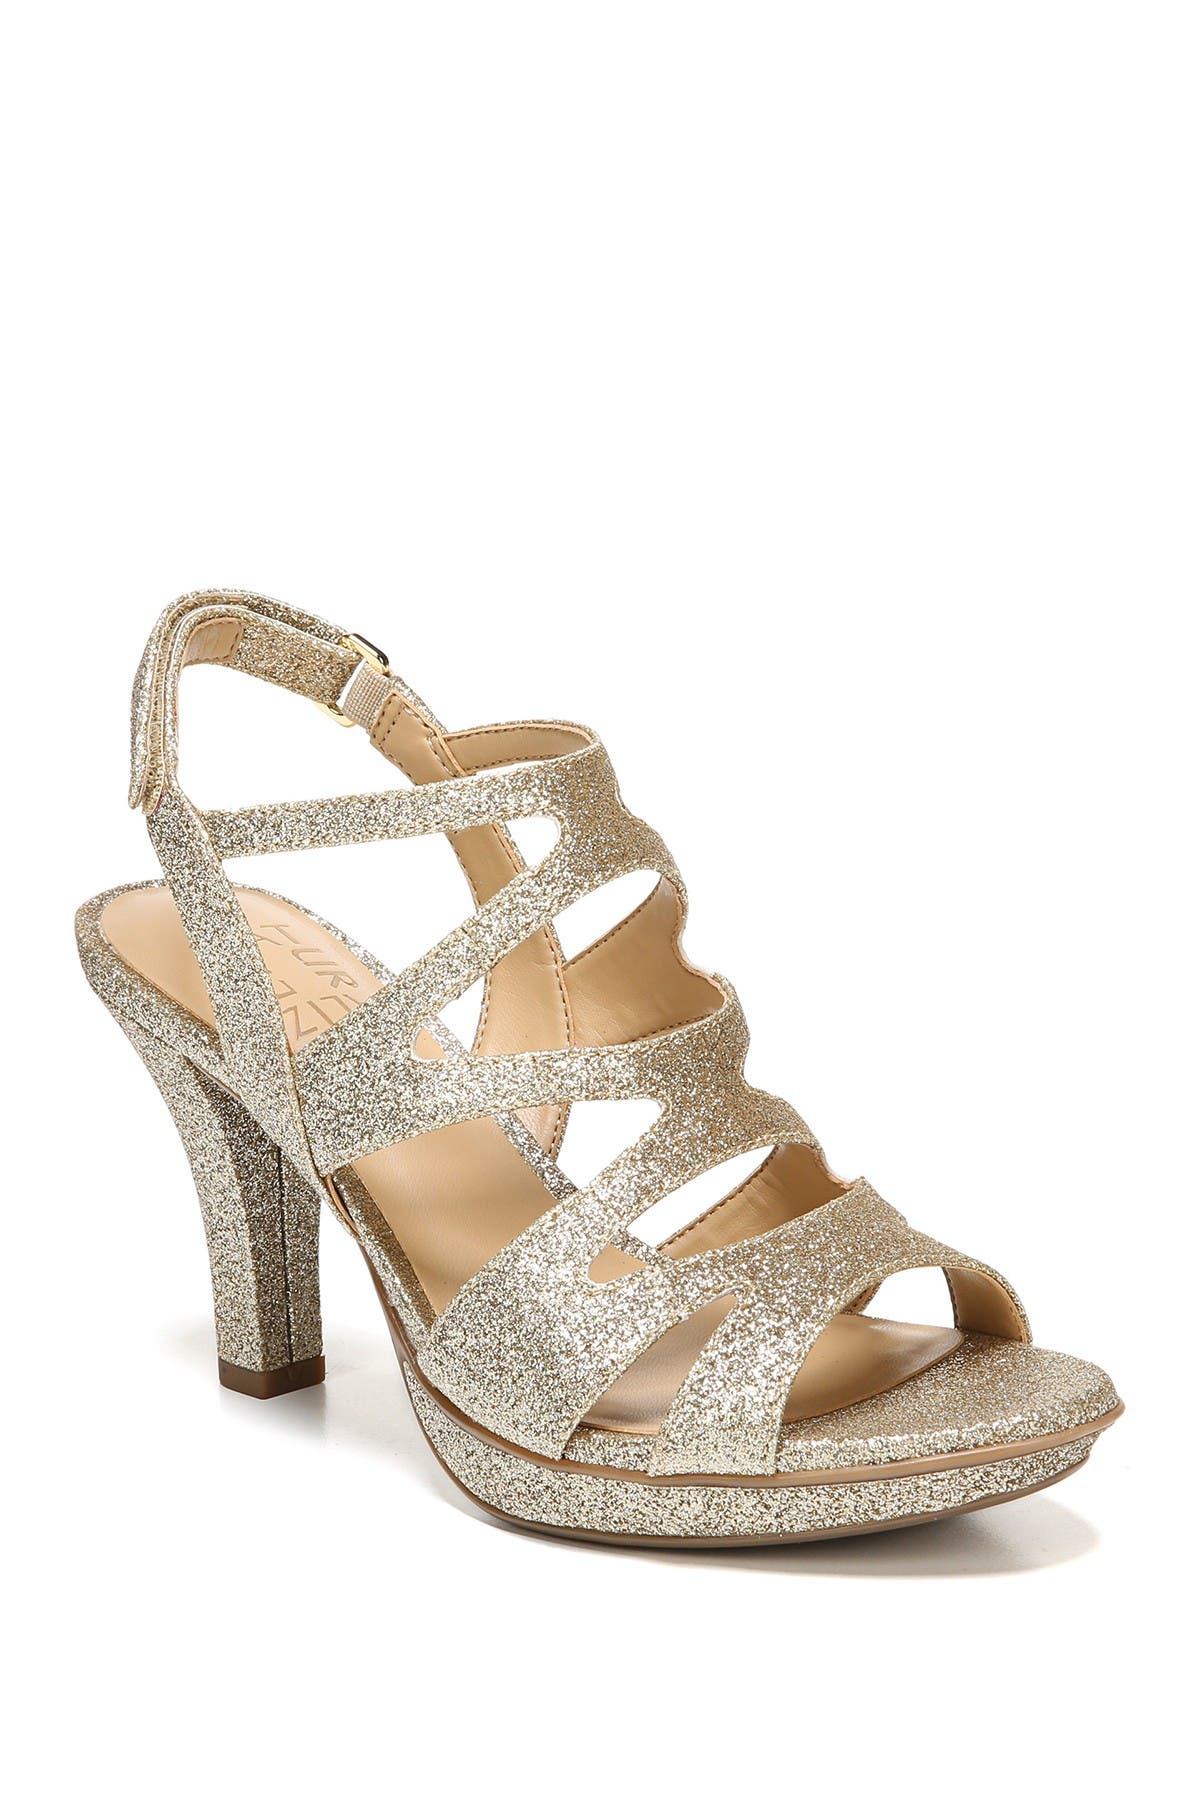 wide width beige heels